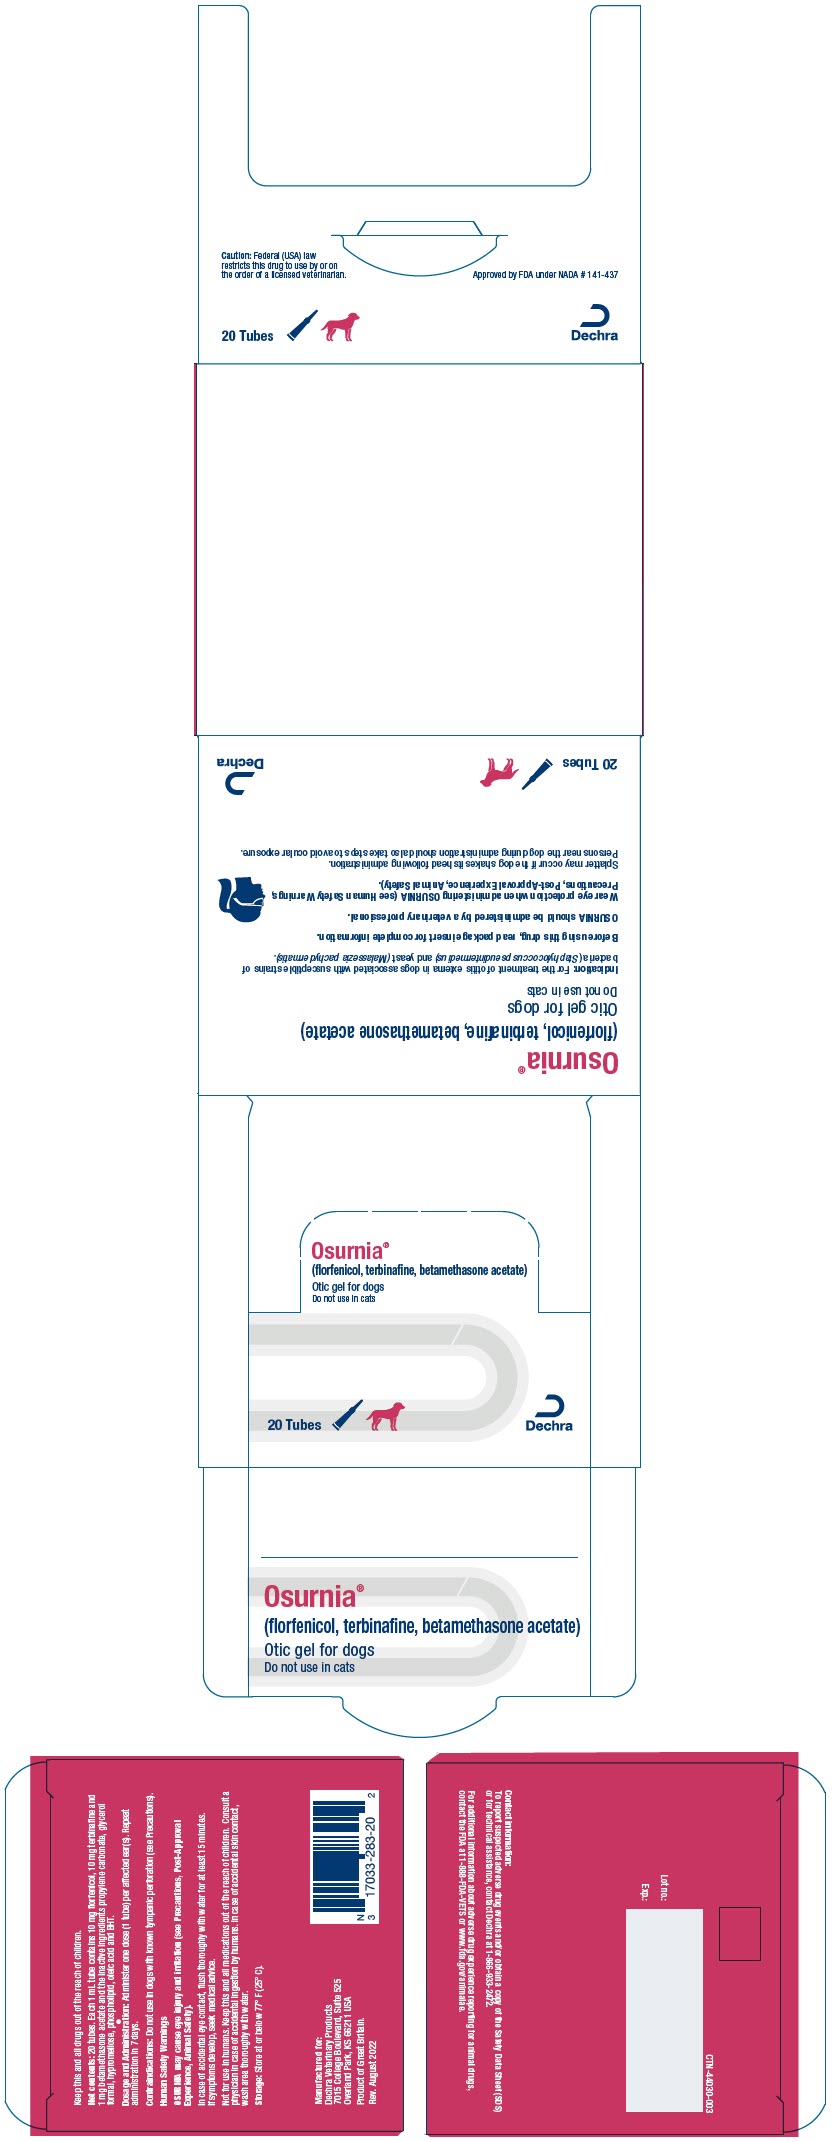 PRINCIPAL DISPLAY PANEL - 20 Tube Carton